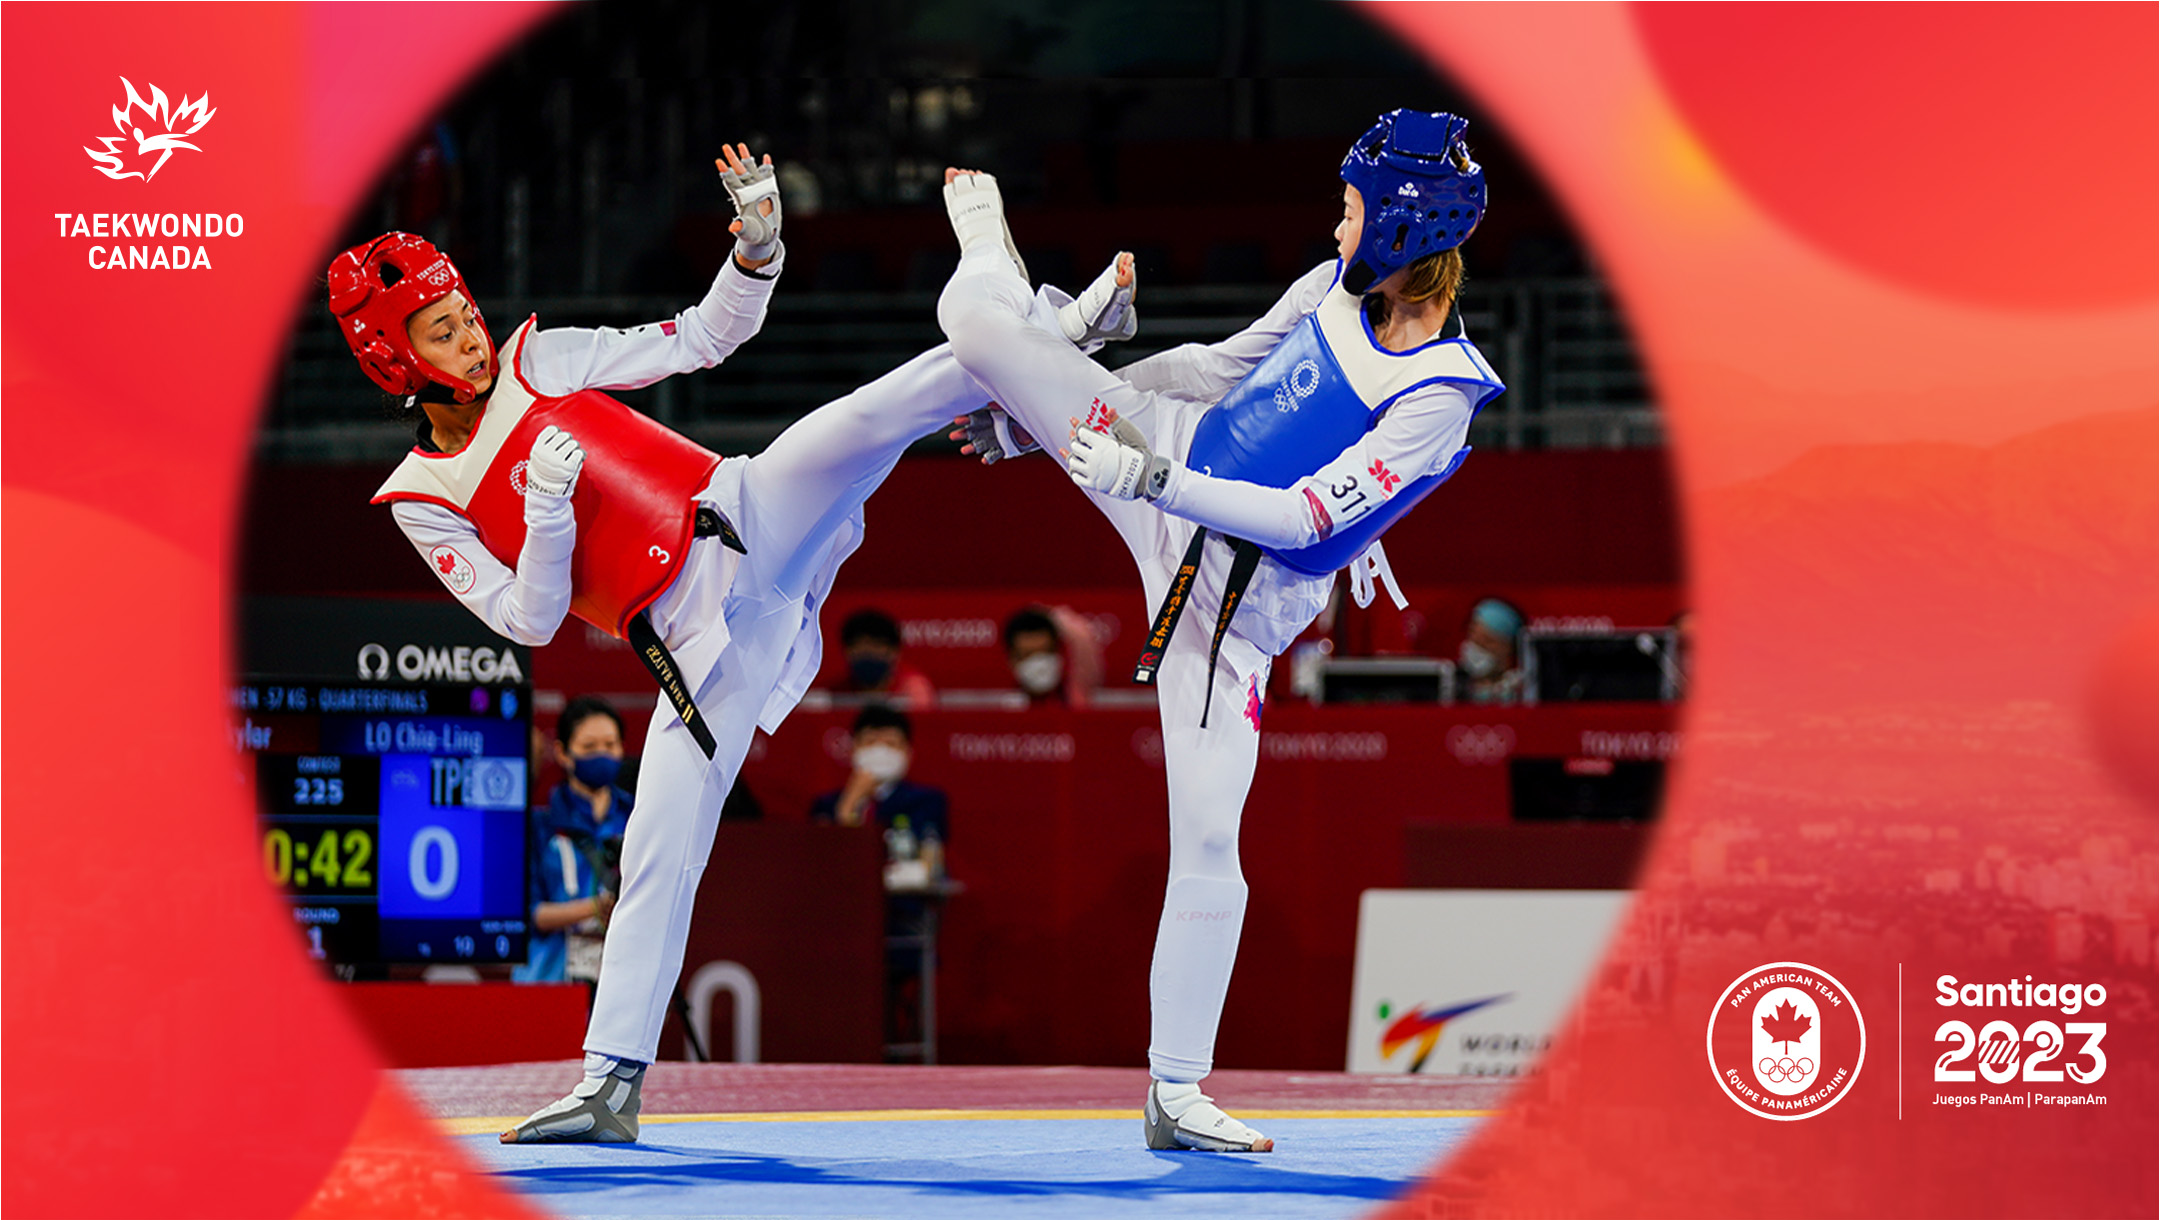 Se anuncia el equipo canadiense de taekwondo de Santiago 2023 – Team Canada